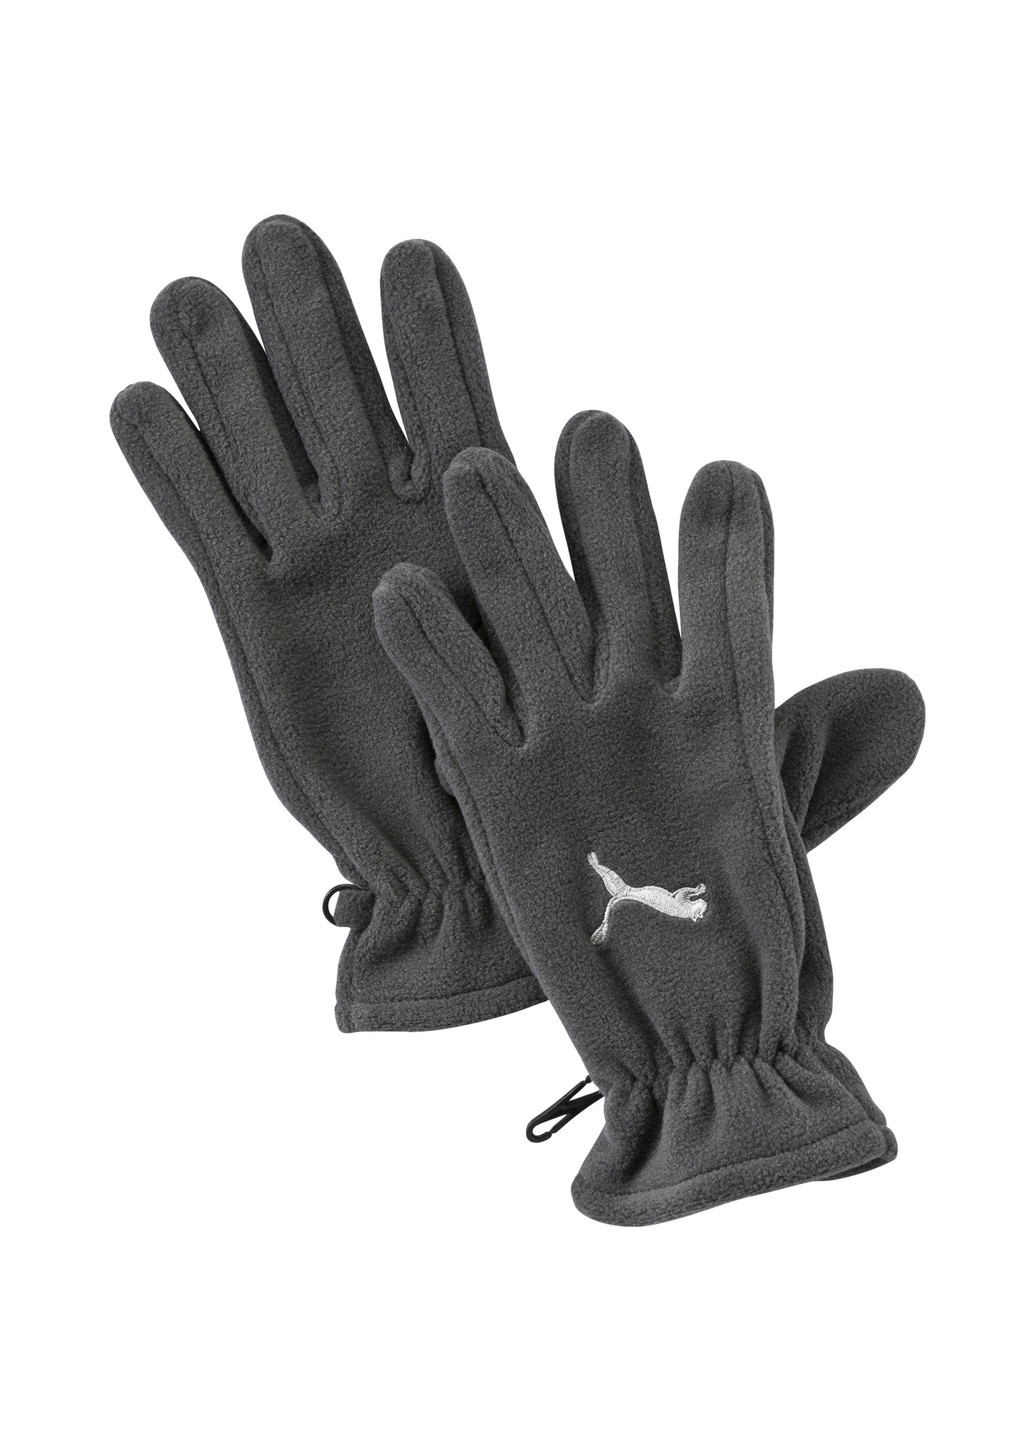 Перчатки Puma Fundamentals Fleece Gloves однотонные серые спортивные